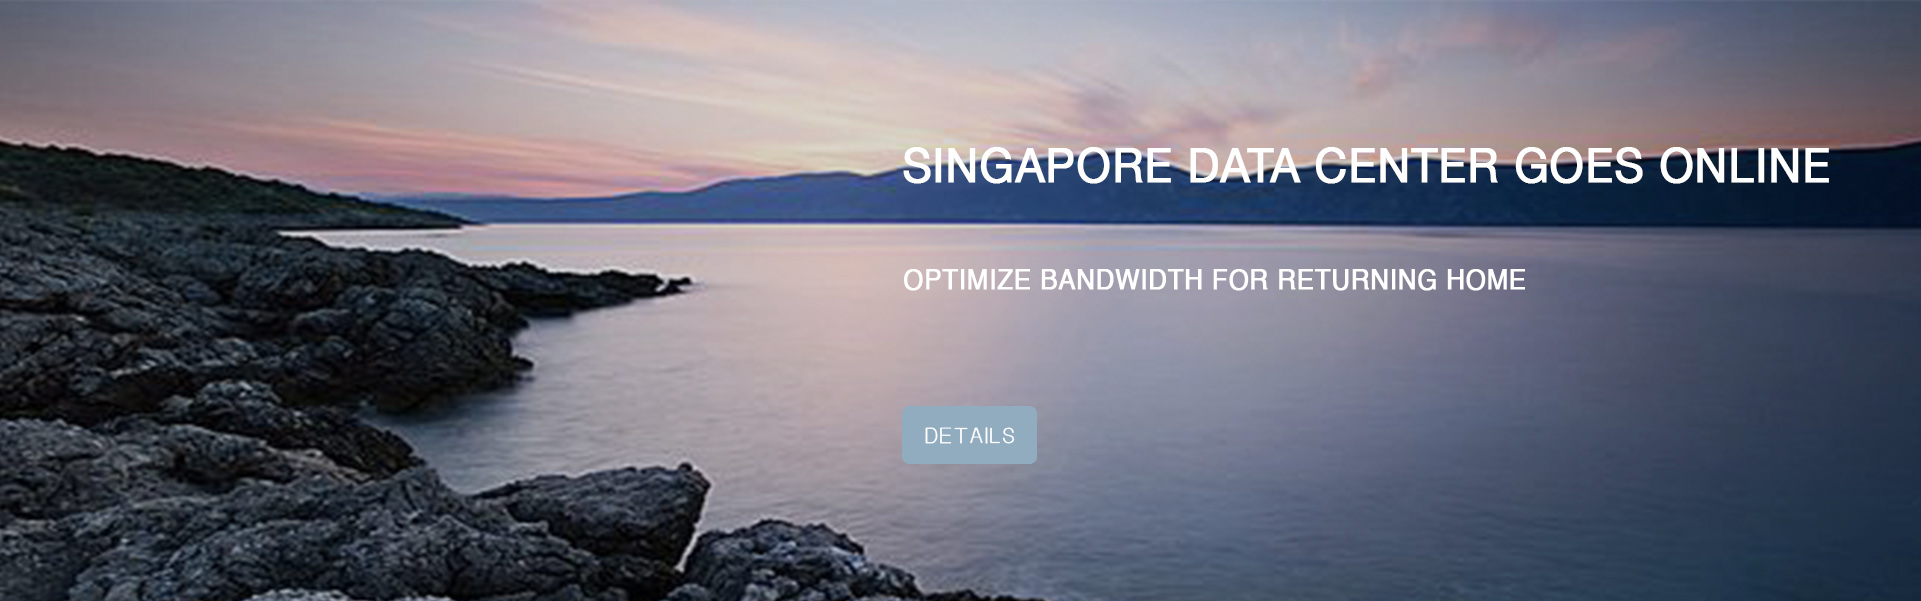 新加坡数据中心上线